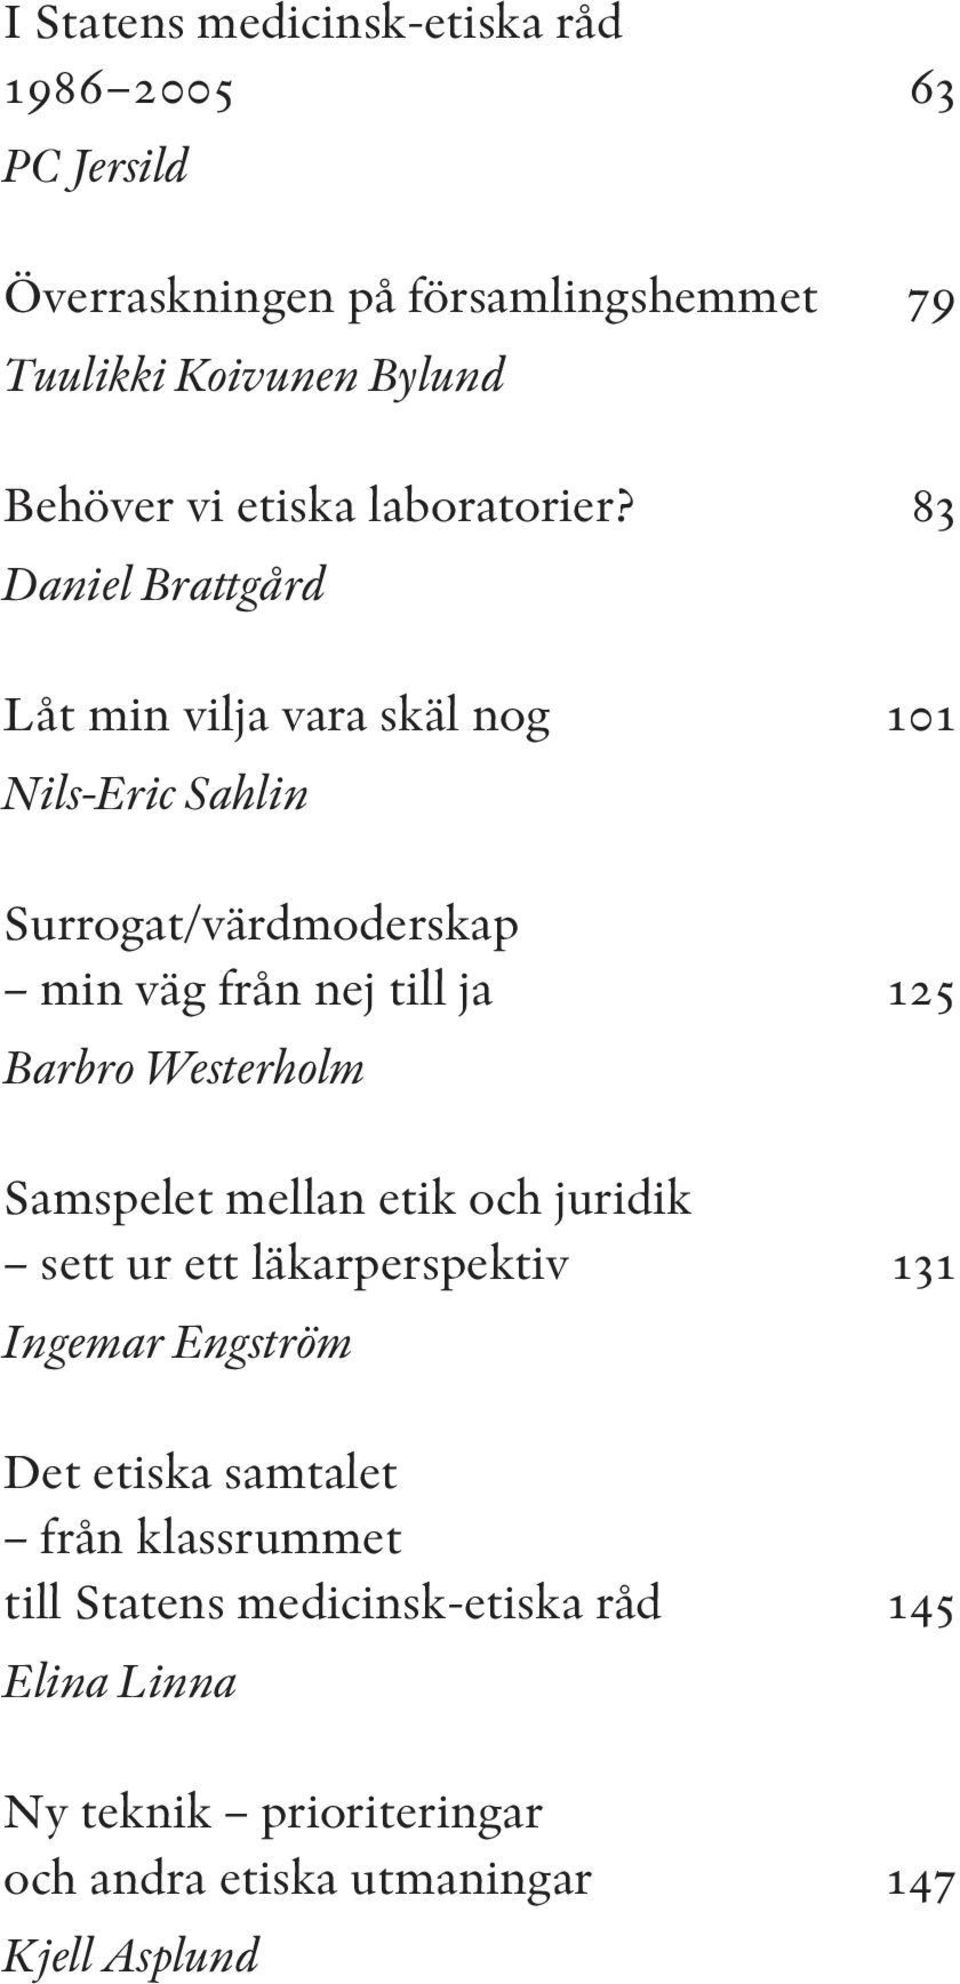 83 Daniel Brattgård Låt min vilja vara skäl nog 101 Nils-Eric Sahlin Surrogat/värdmoderskap min väg från nej till ja 125 Barbro